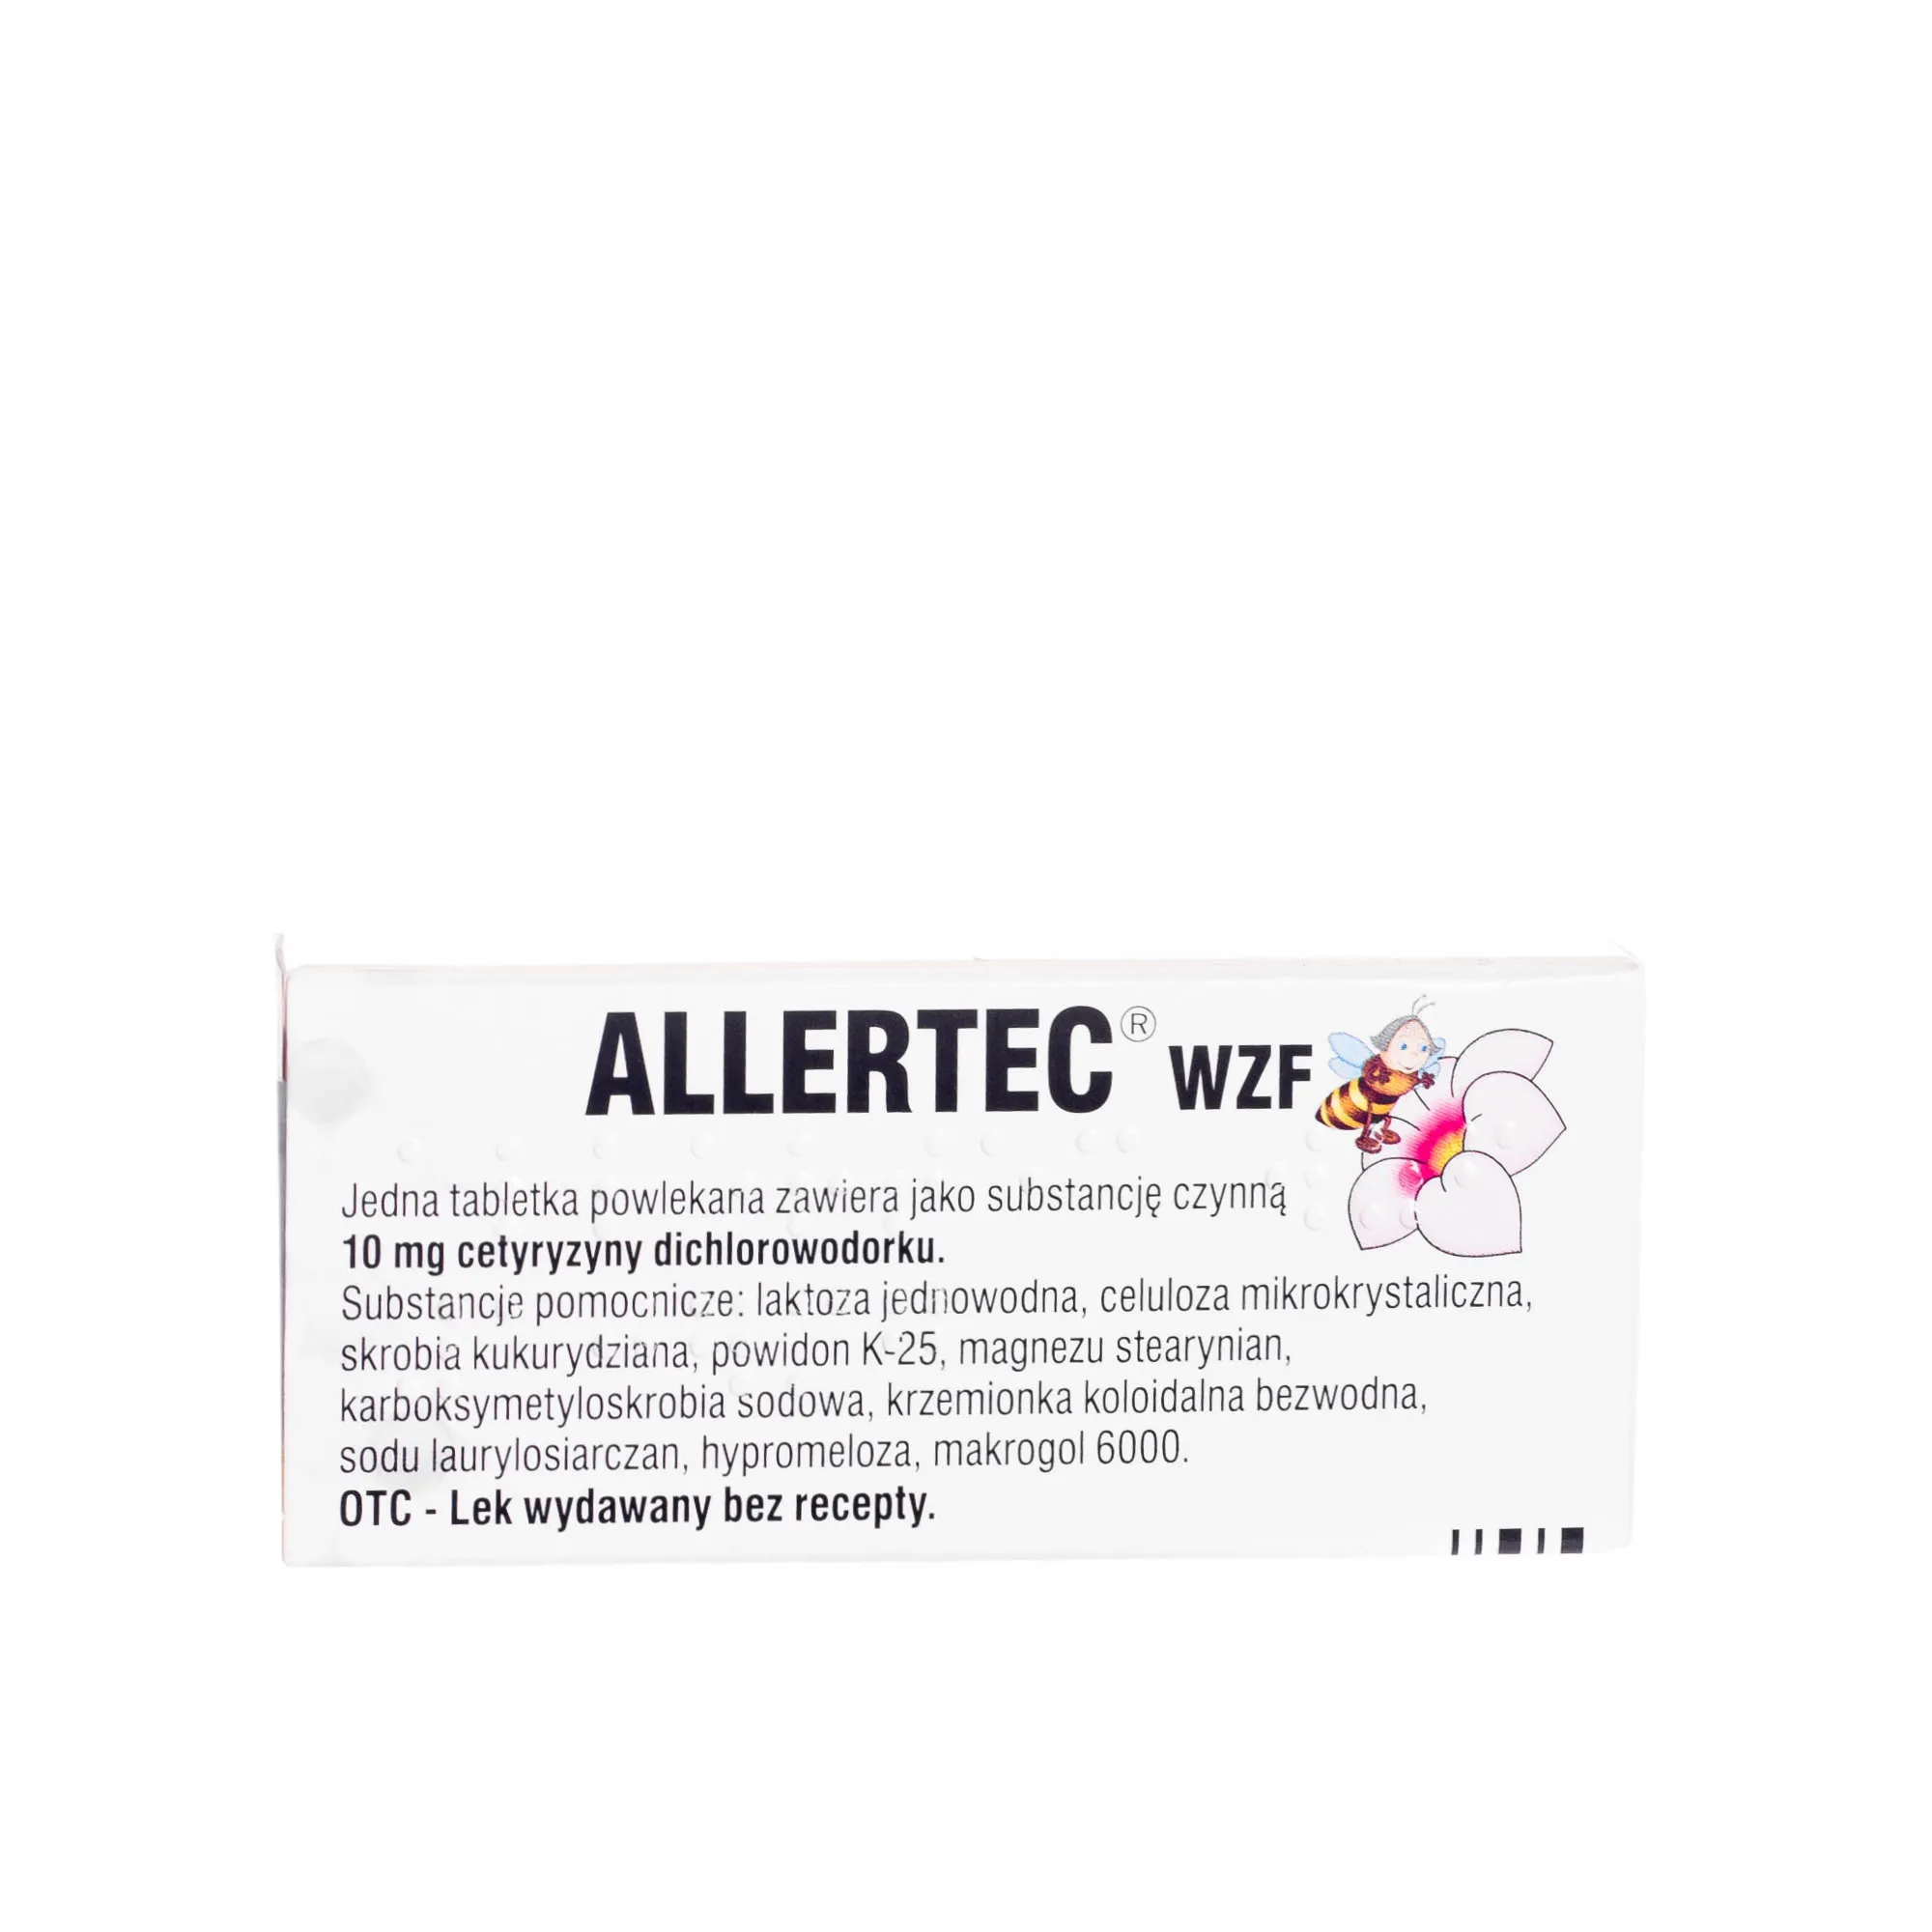 Allertec WZF, lek przeciwalergiczny, 7 tabletek 